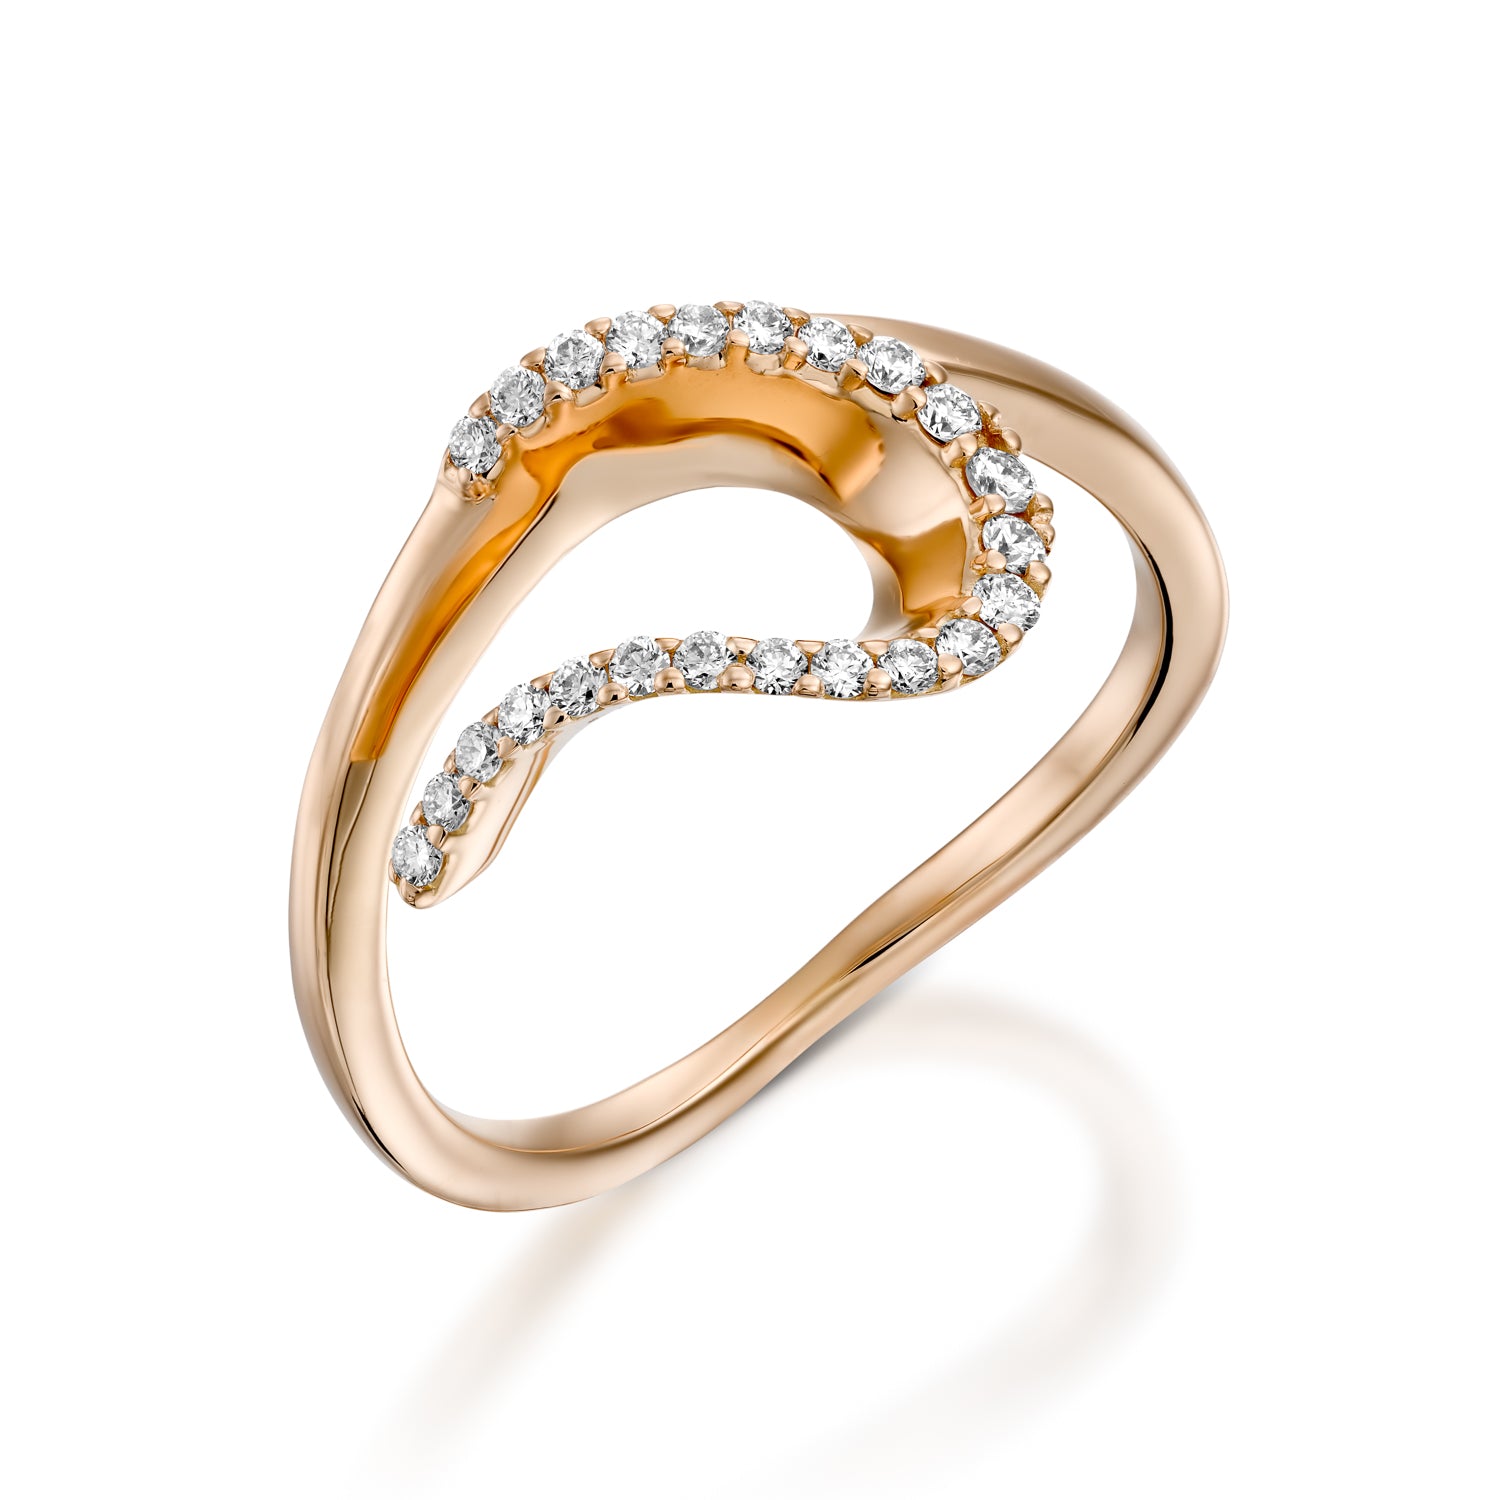 Unique Promise Ring Design Ideas